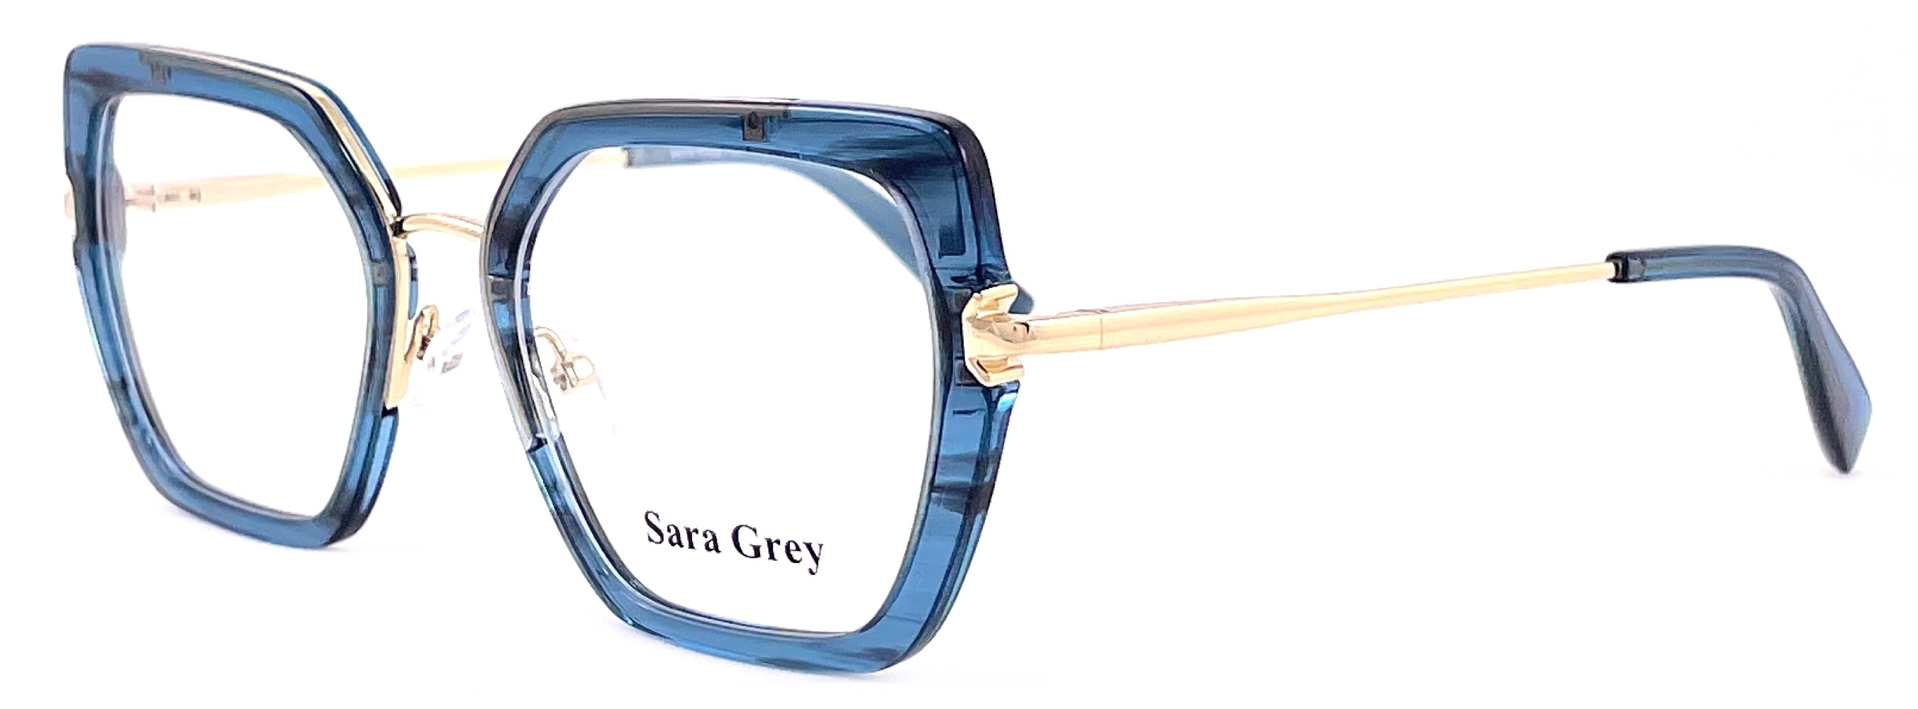 Sara Grey 1662 C04 2